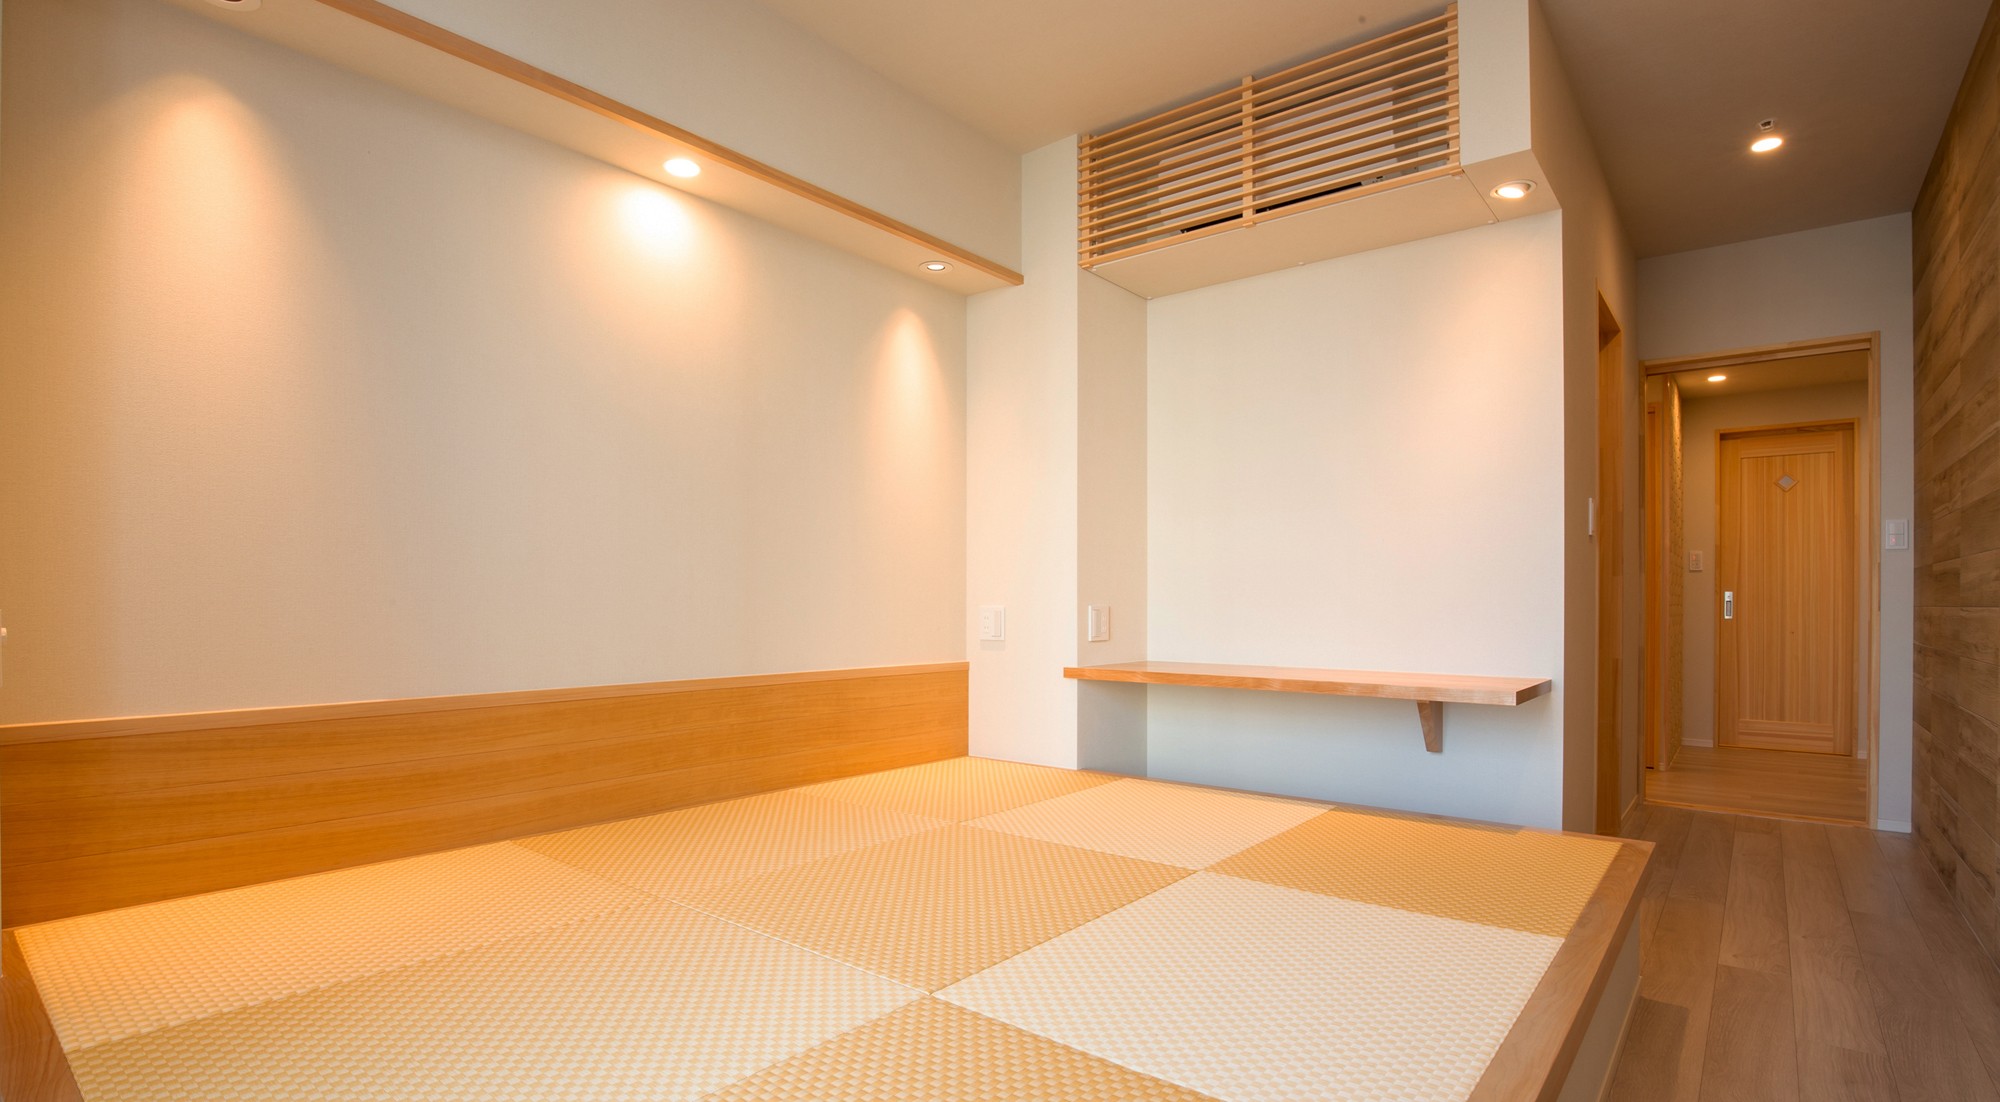 寝室 新築分譲マンションのインテリア 東京 晴海 01 ベッドルーム事例 Suvaco スバコ